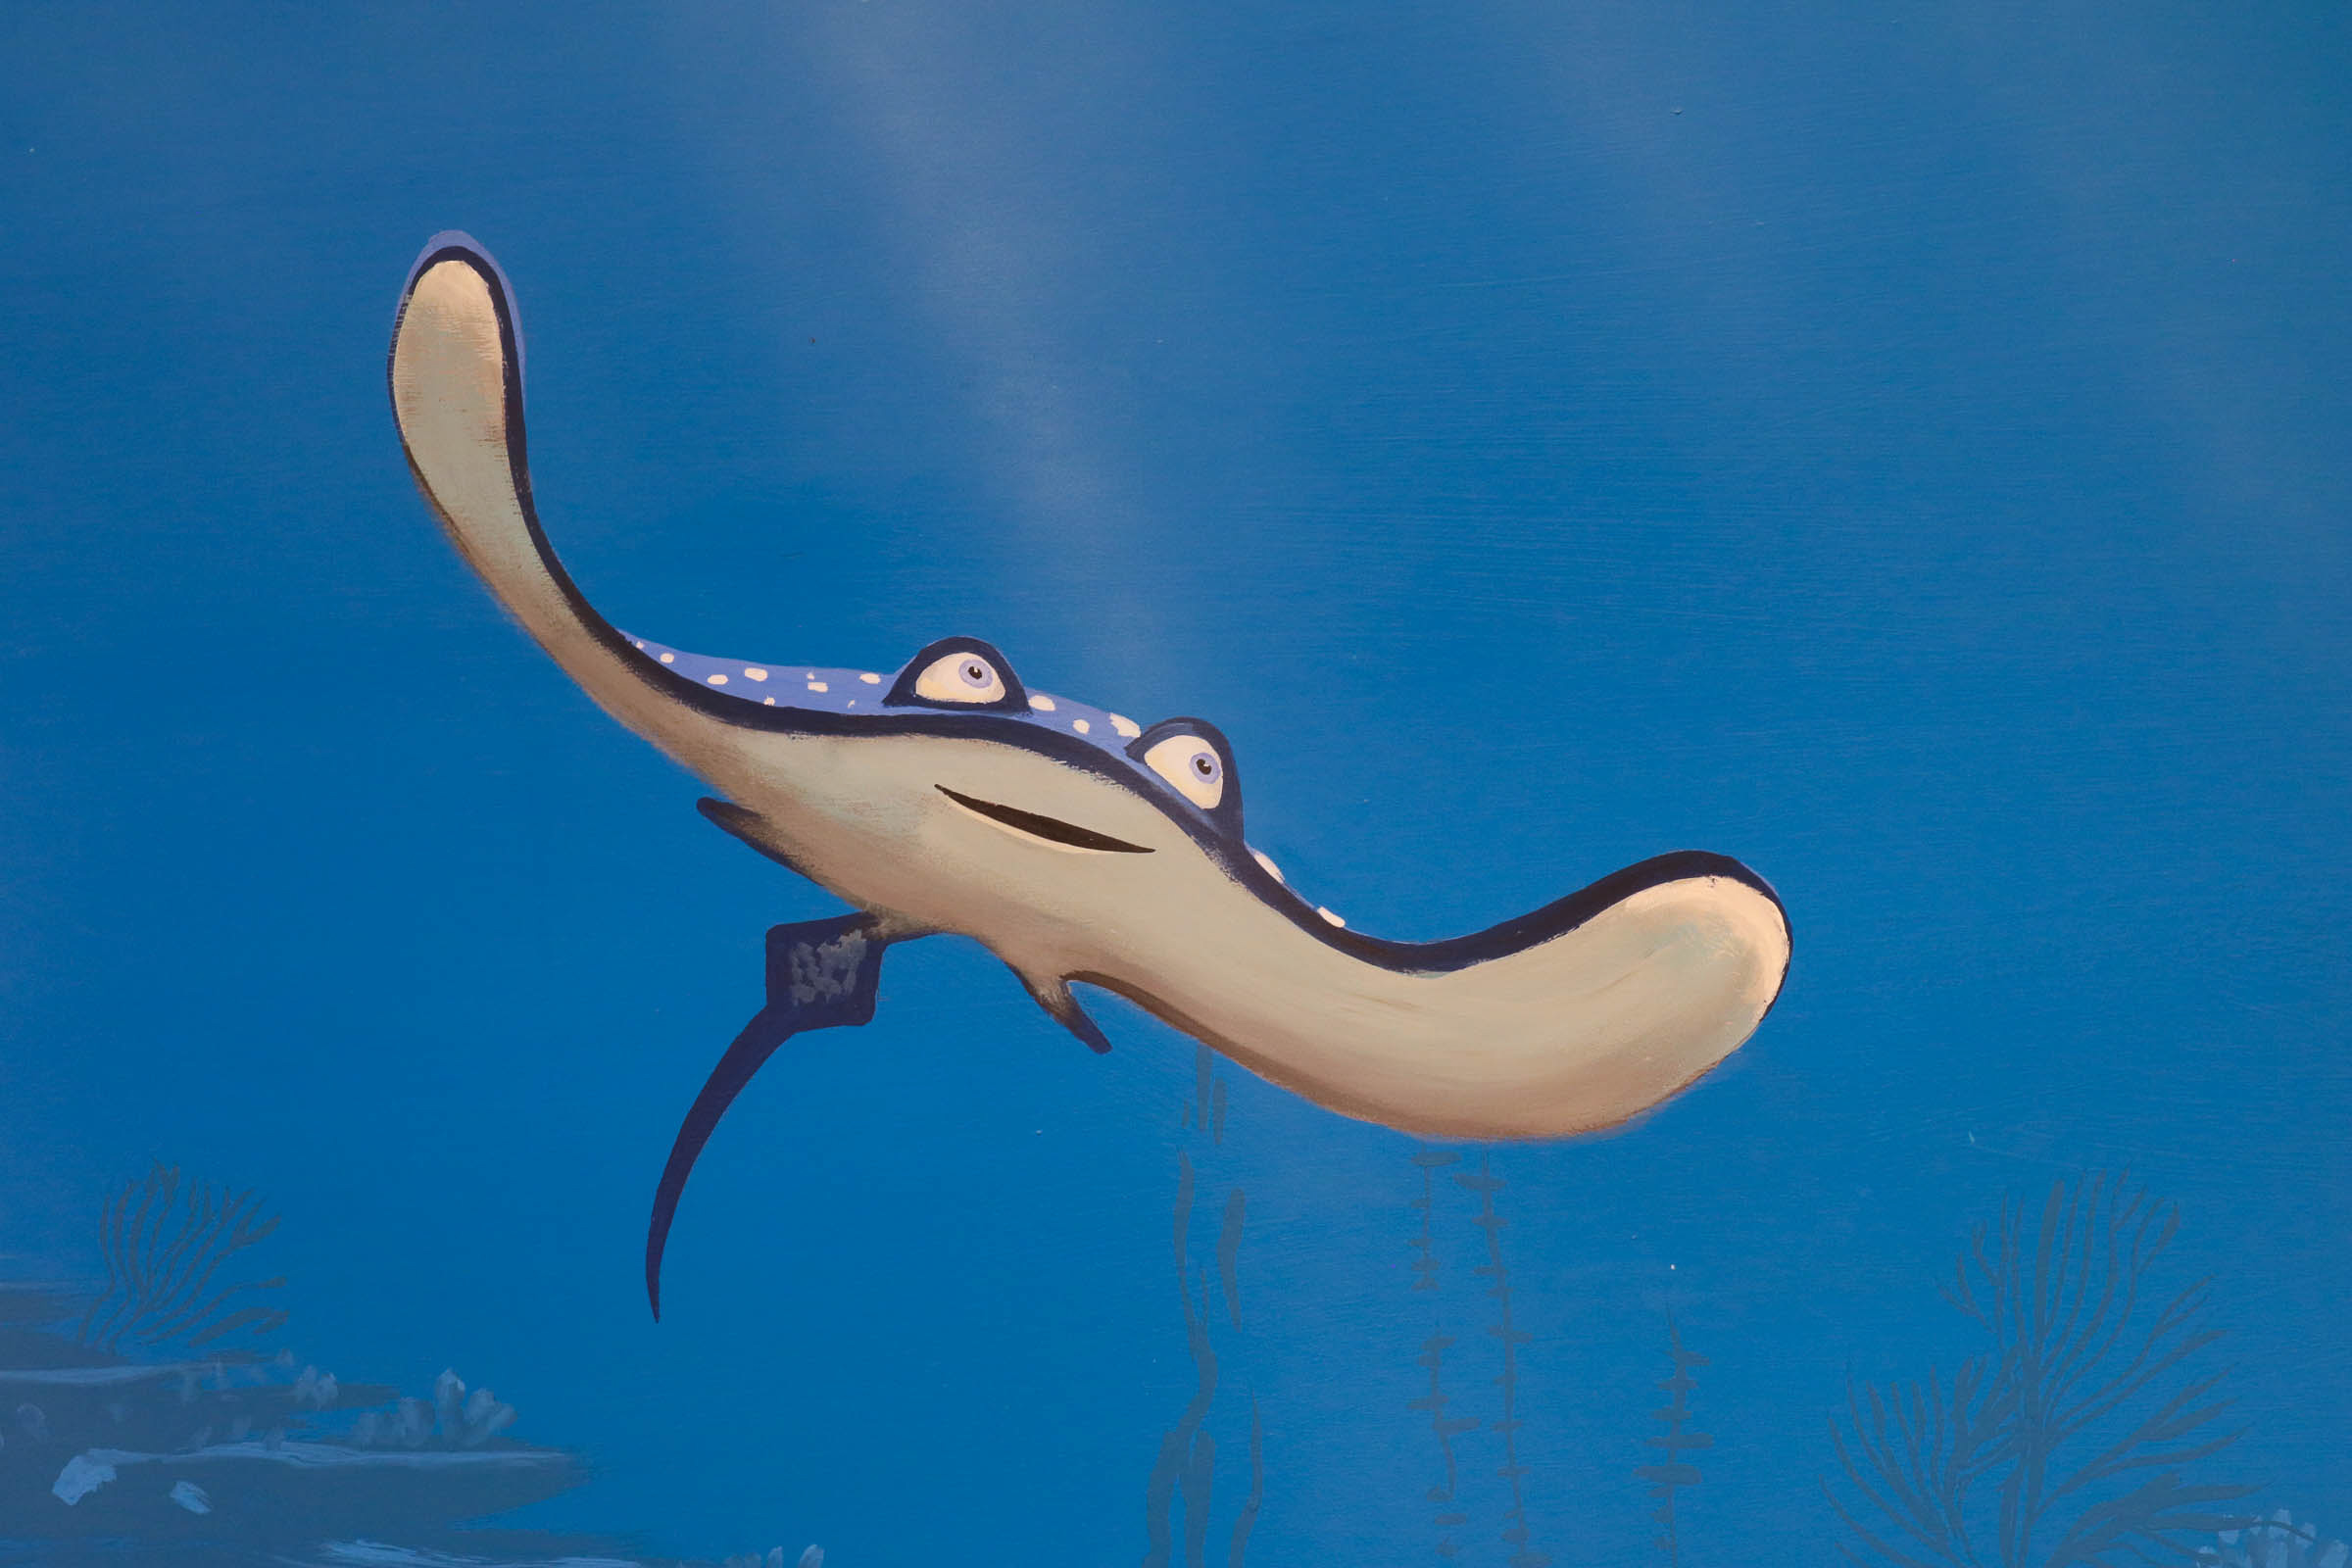 Mr. Ray in Nemo bathroom mural